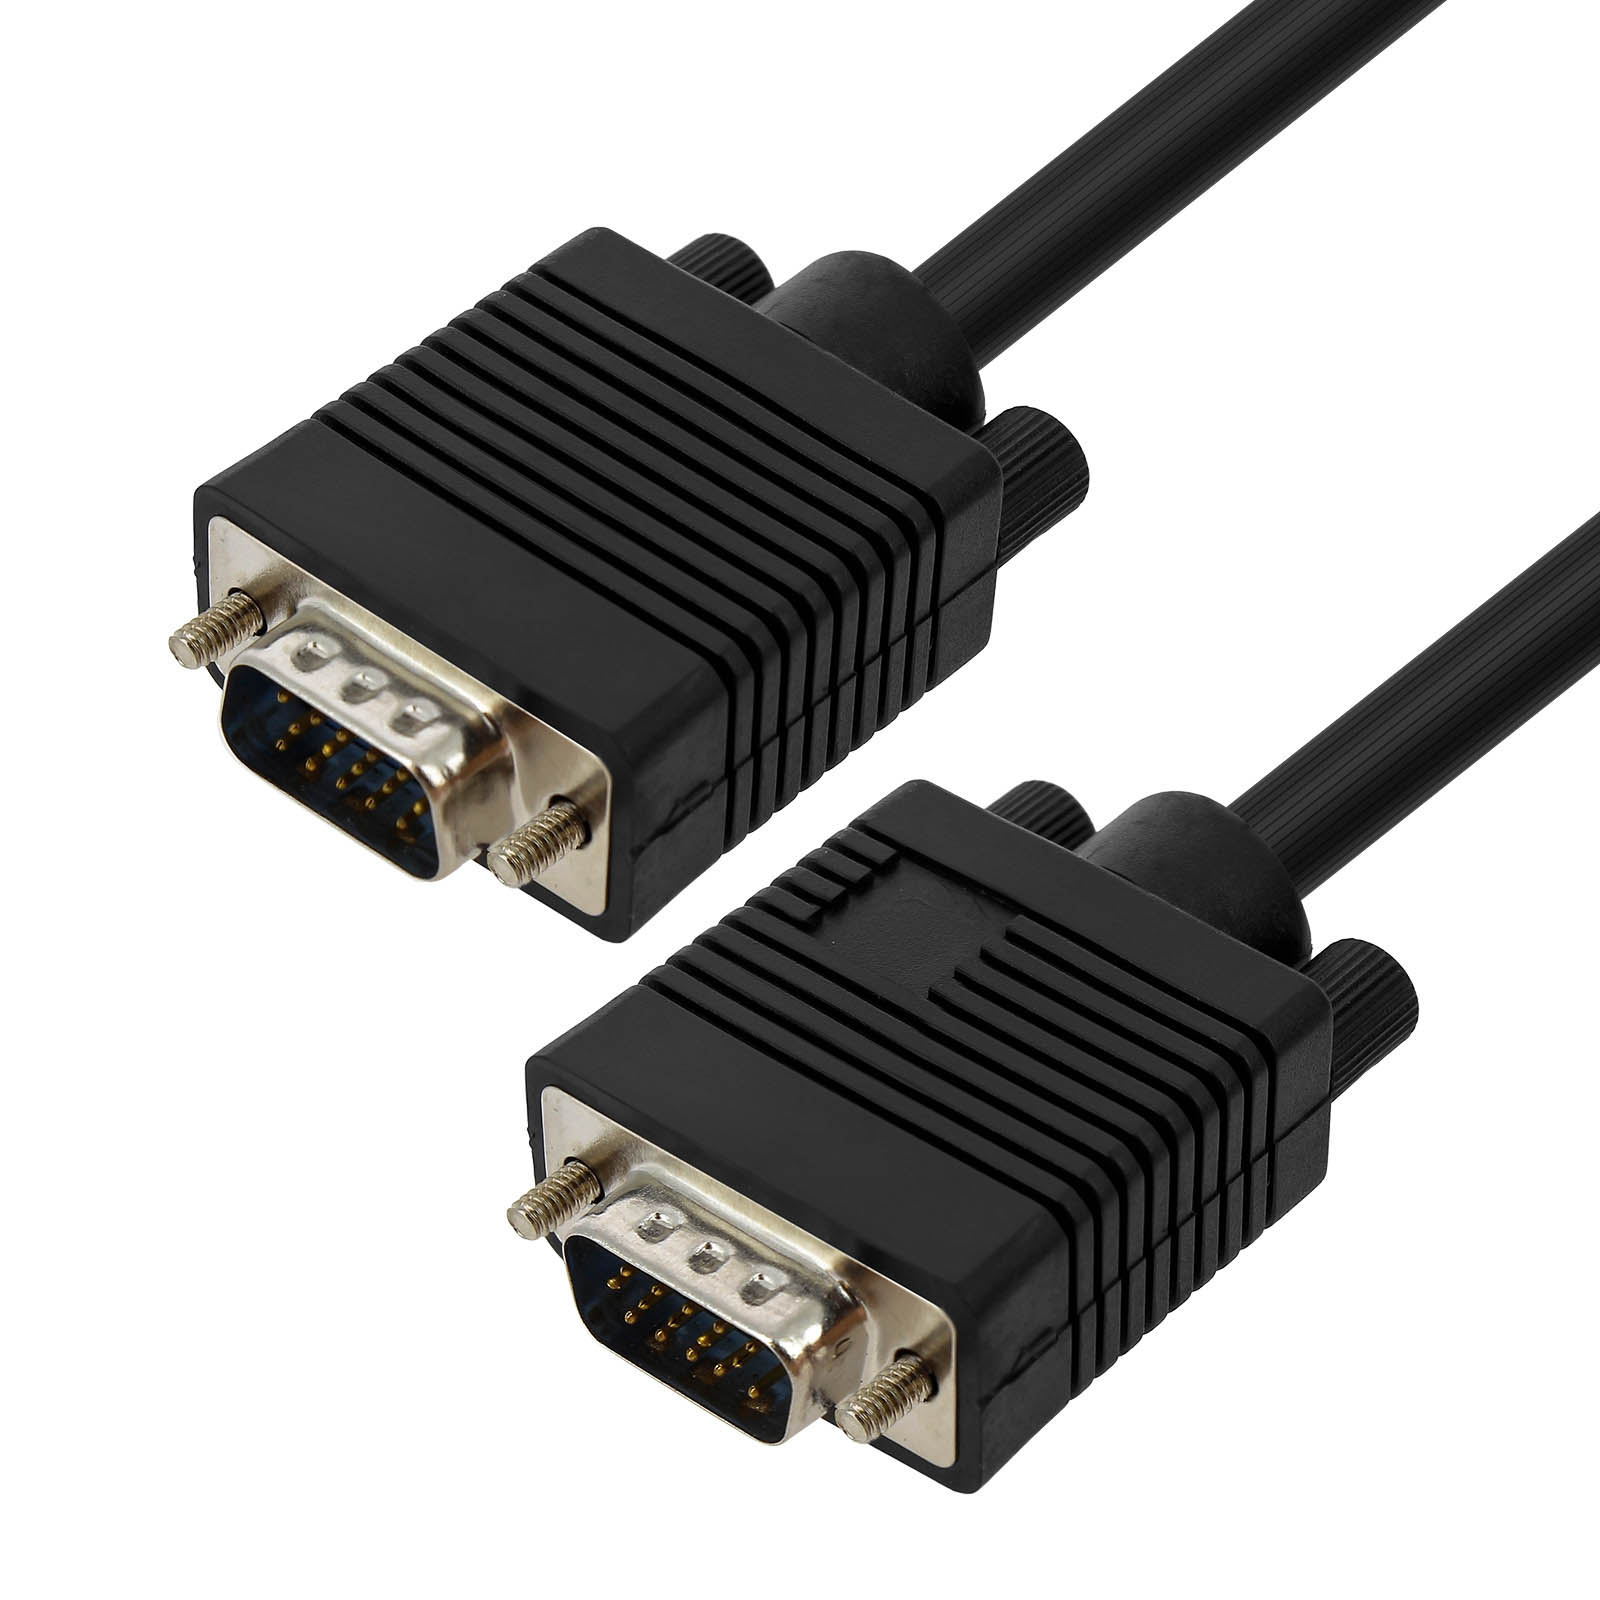 m VGA LINQ 20 VGA-Kabel, Kabel,